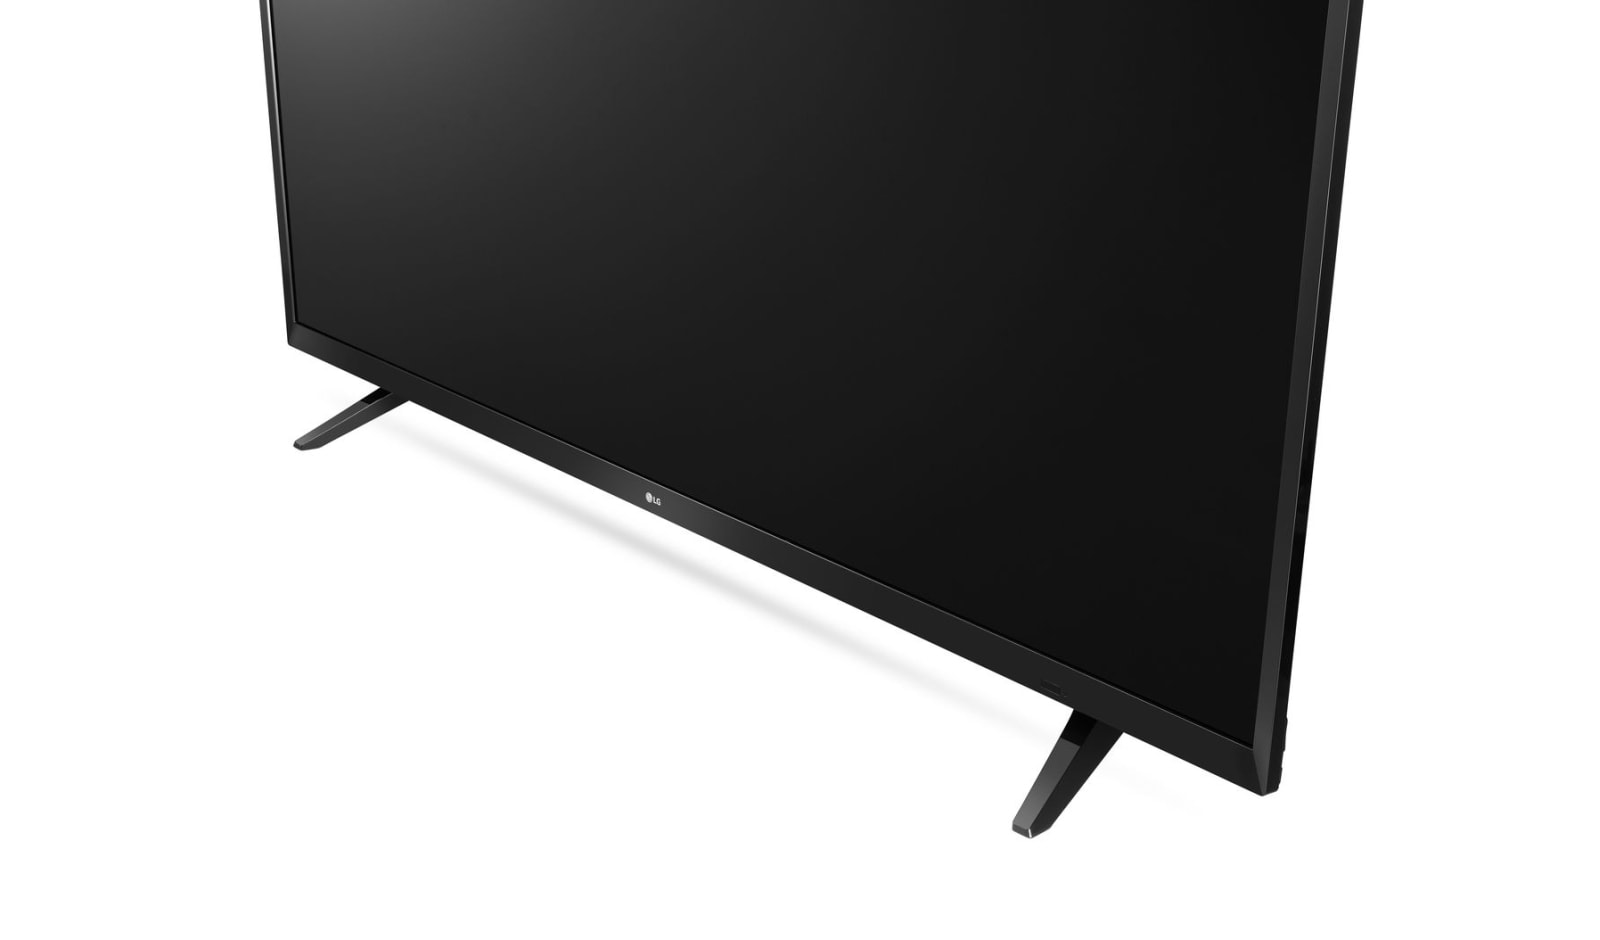 LG 65" UHD TV 4K - 65UJ620V